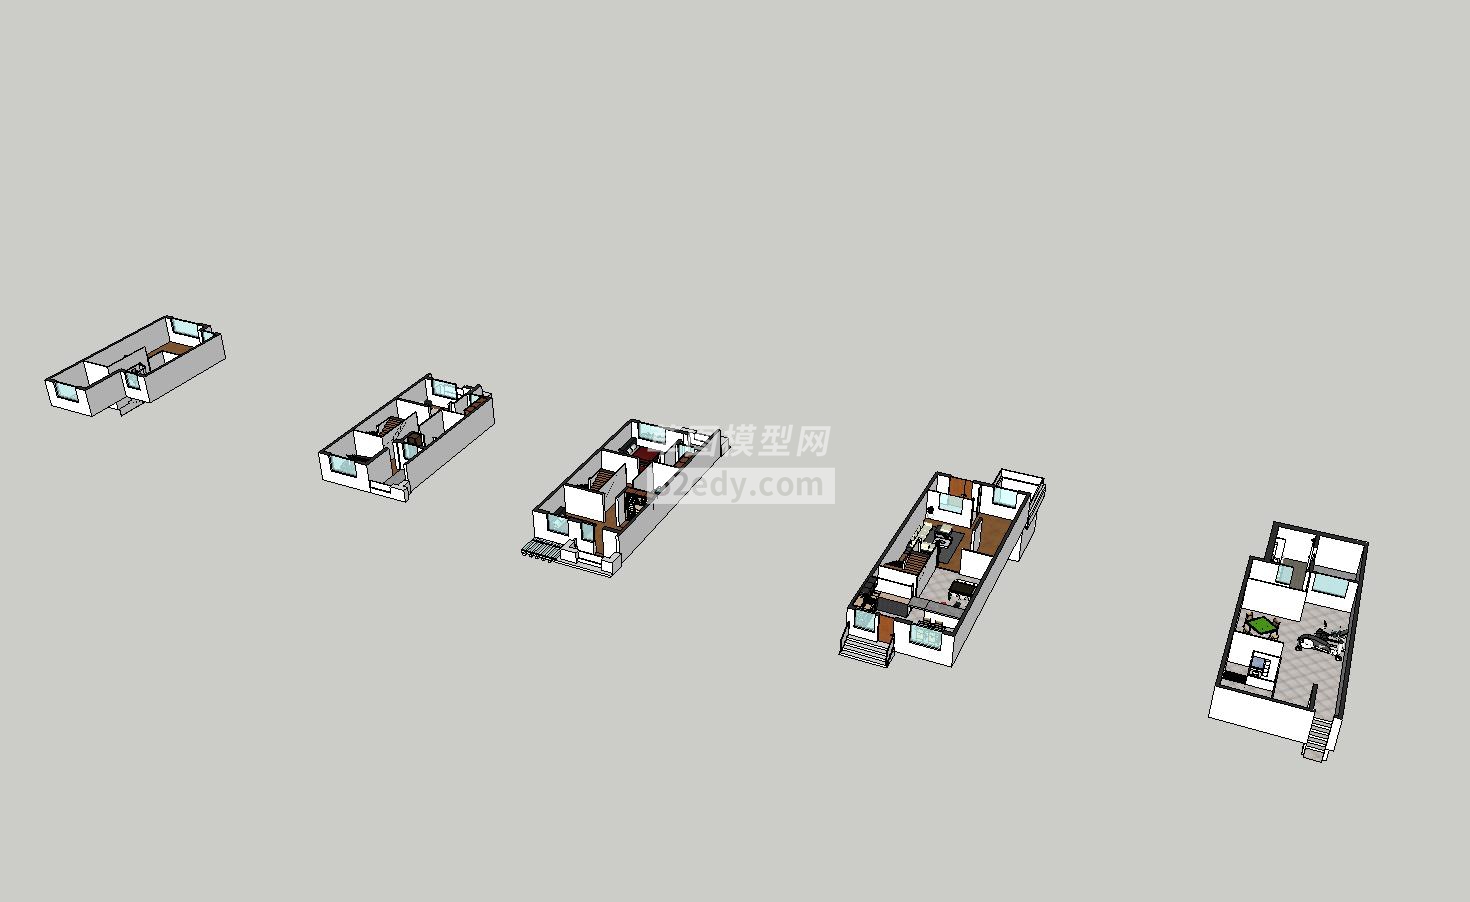 串联住房室内家具装饰布置SU模型设计QQ浏览器截图20190125032917(1)